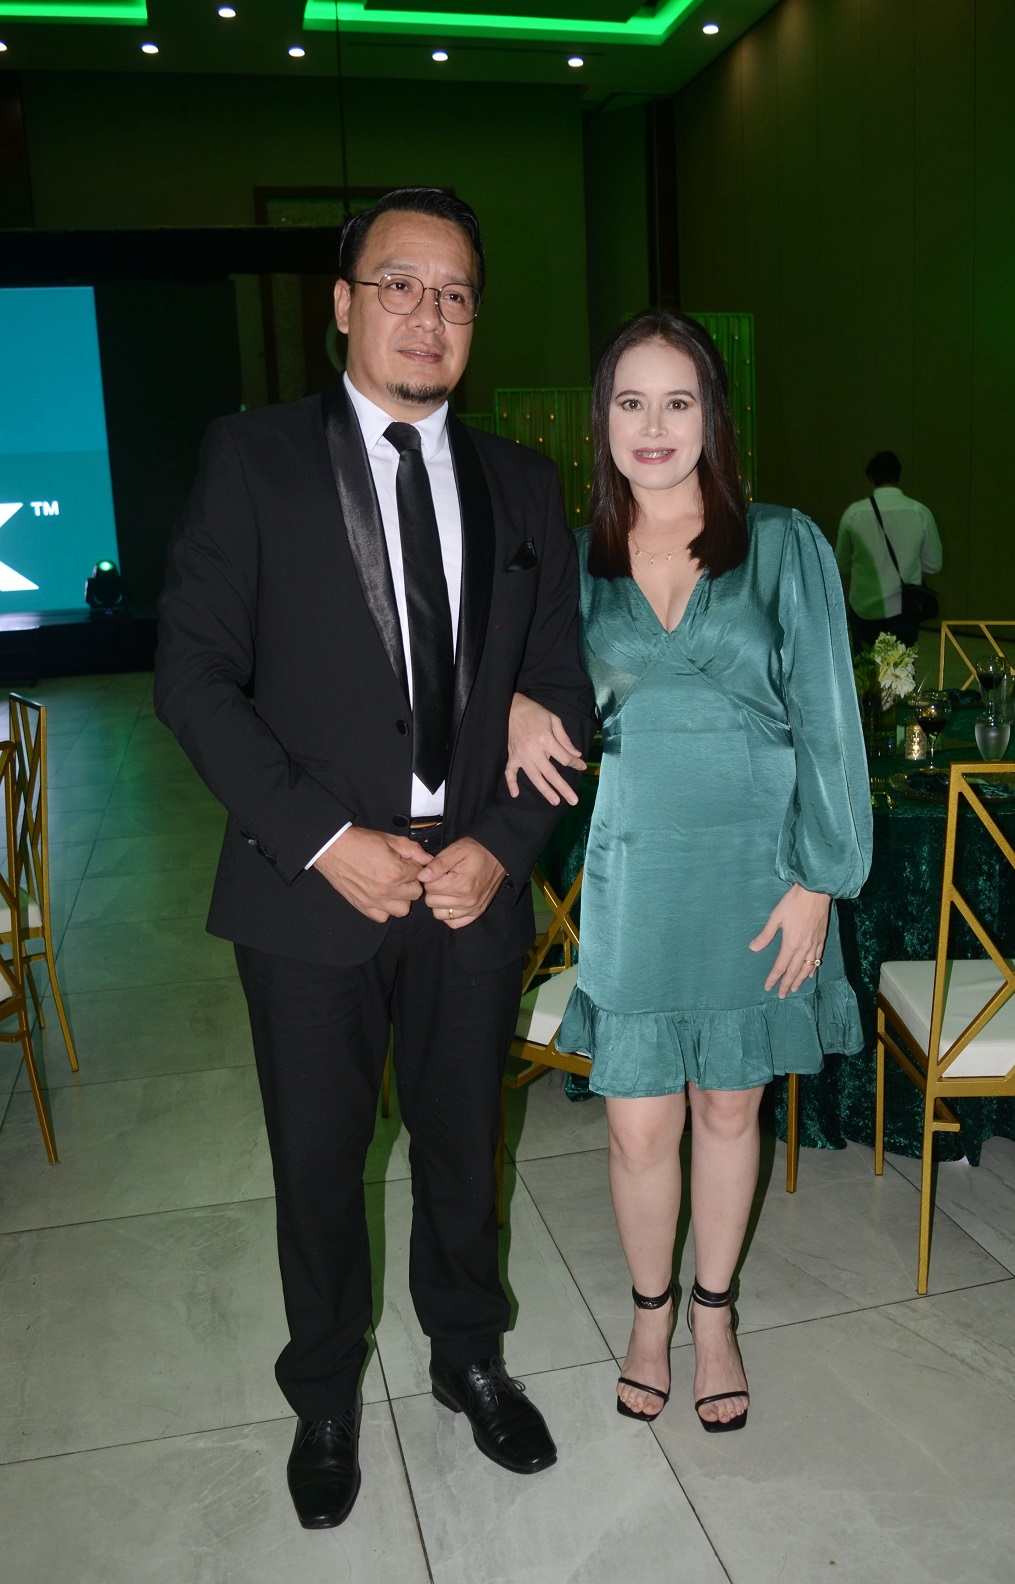 Cena de gala en honor a diplomáticos de la Ficac en San Pedro Sula